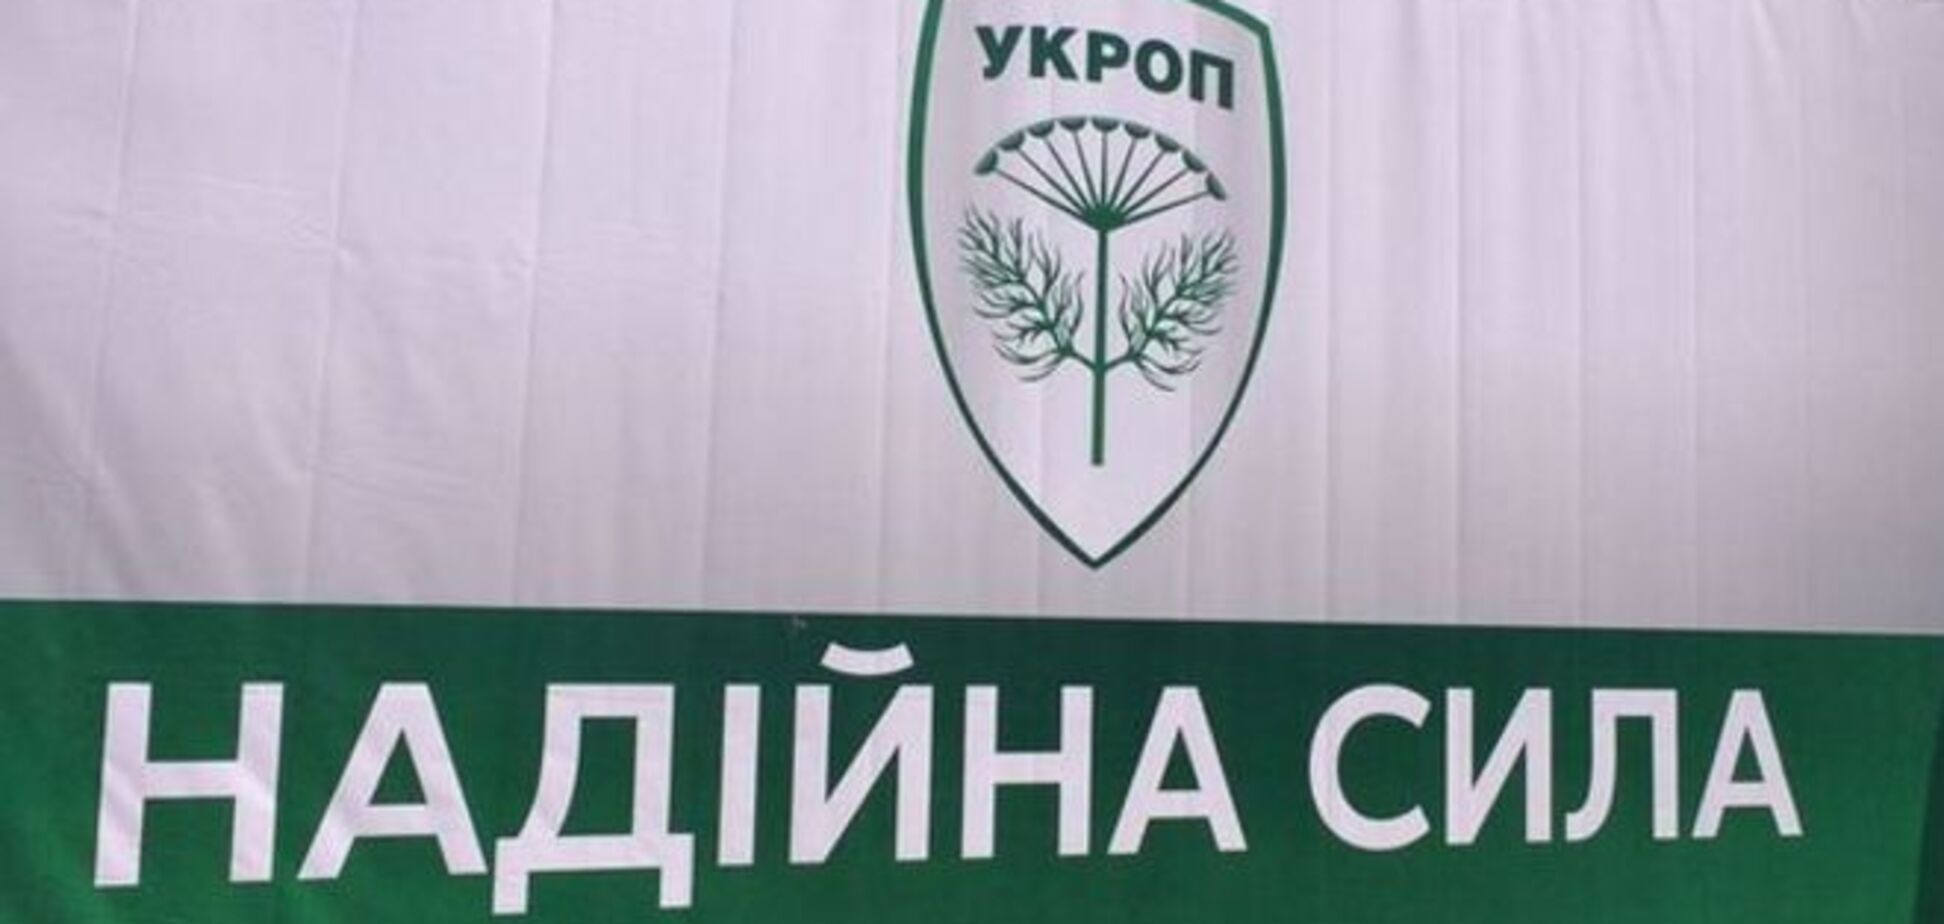 Партия 'Украинское объединение патриотов' получила права на использование бренда 'УКРОП'